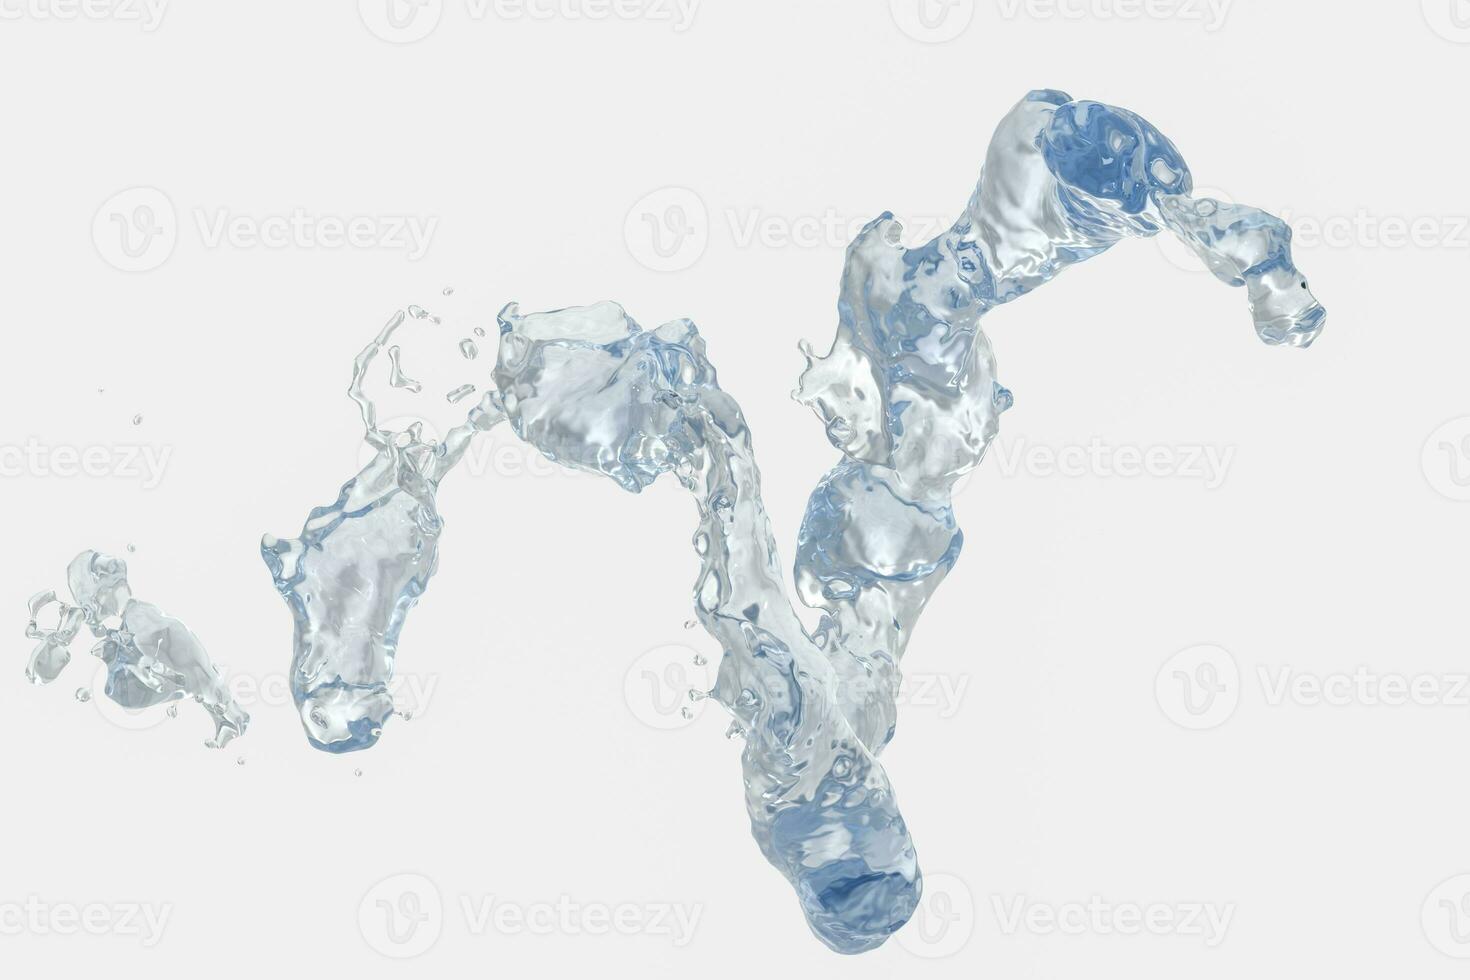 zuiverheid spatten water met creatief vormen, 3d weergave. foto